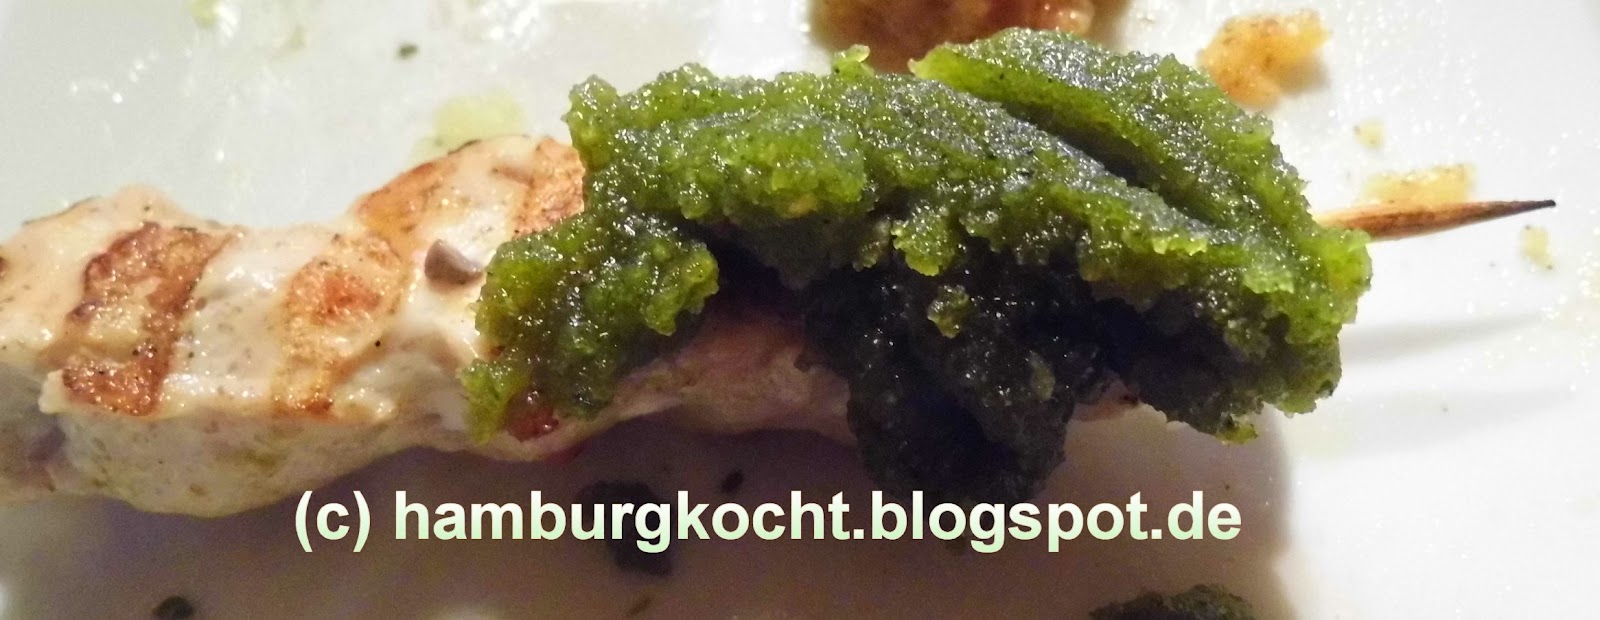 Hamburg kocht!: Hähnchen-Kebab mit Koriander-Pesto (Chicken kebabs with ...